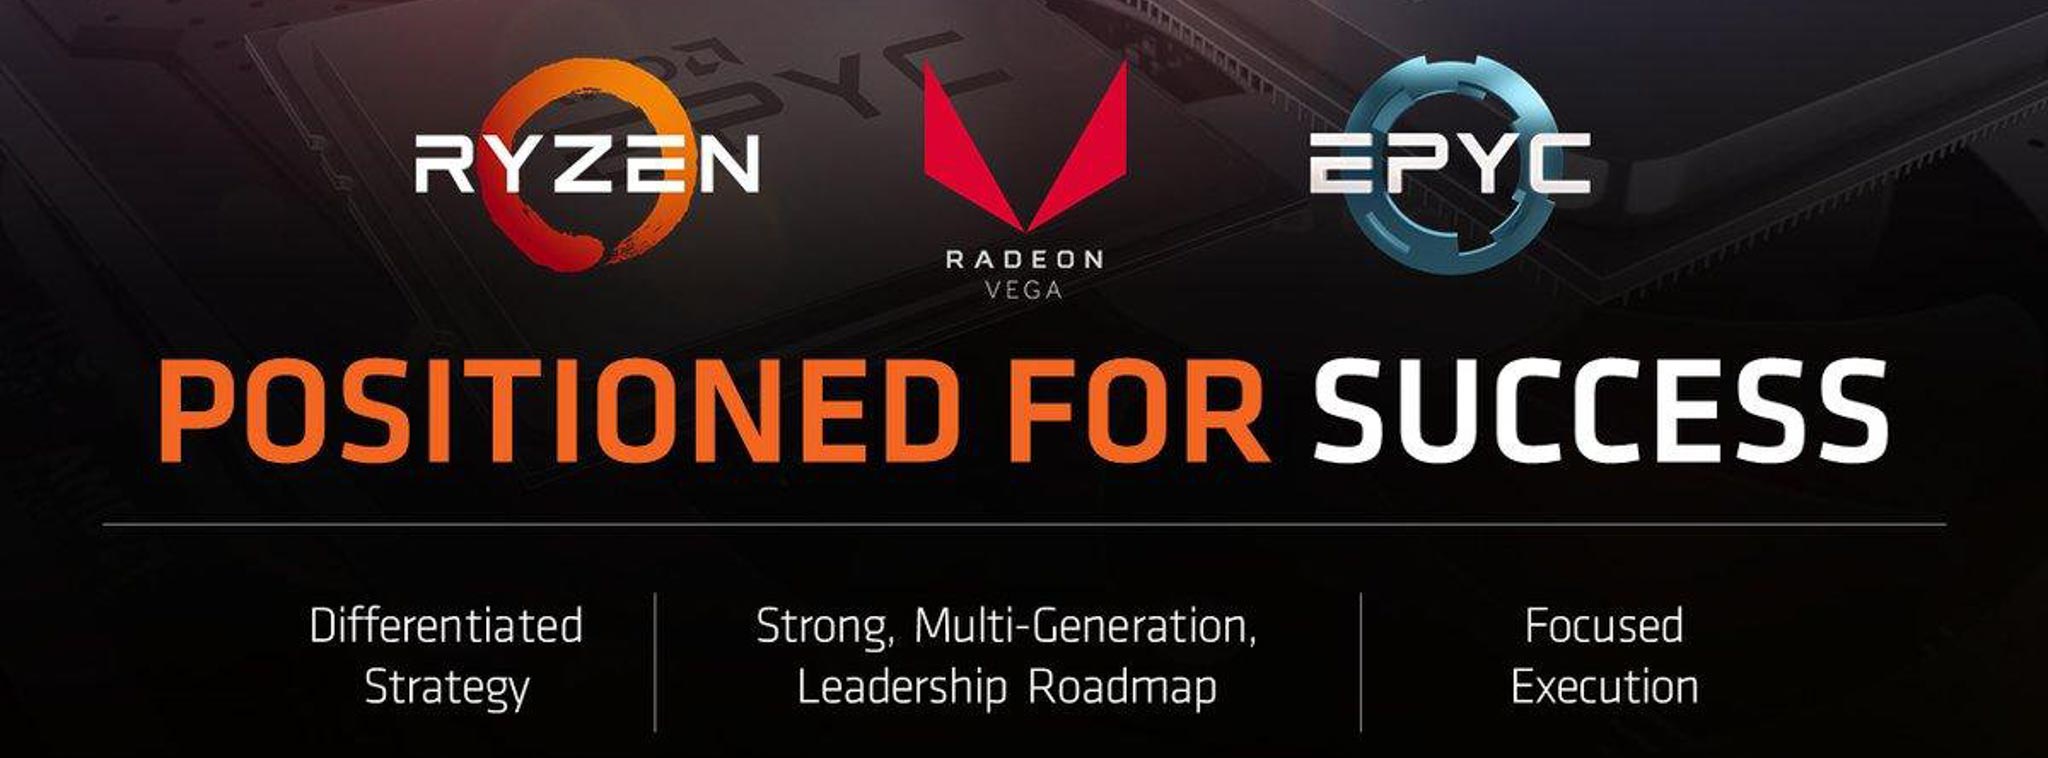 AMD đã có lời trở lại, lợi nhuận đạt 71 triệu USD trong Quý 3/2017